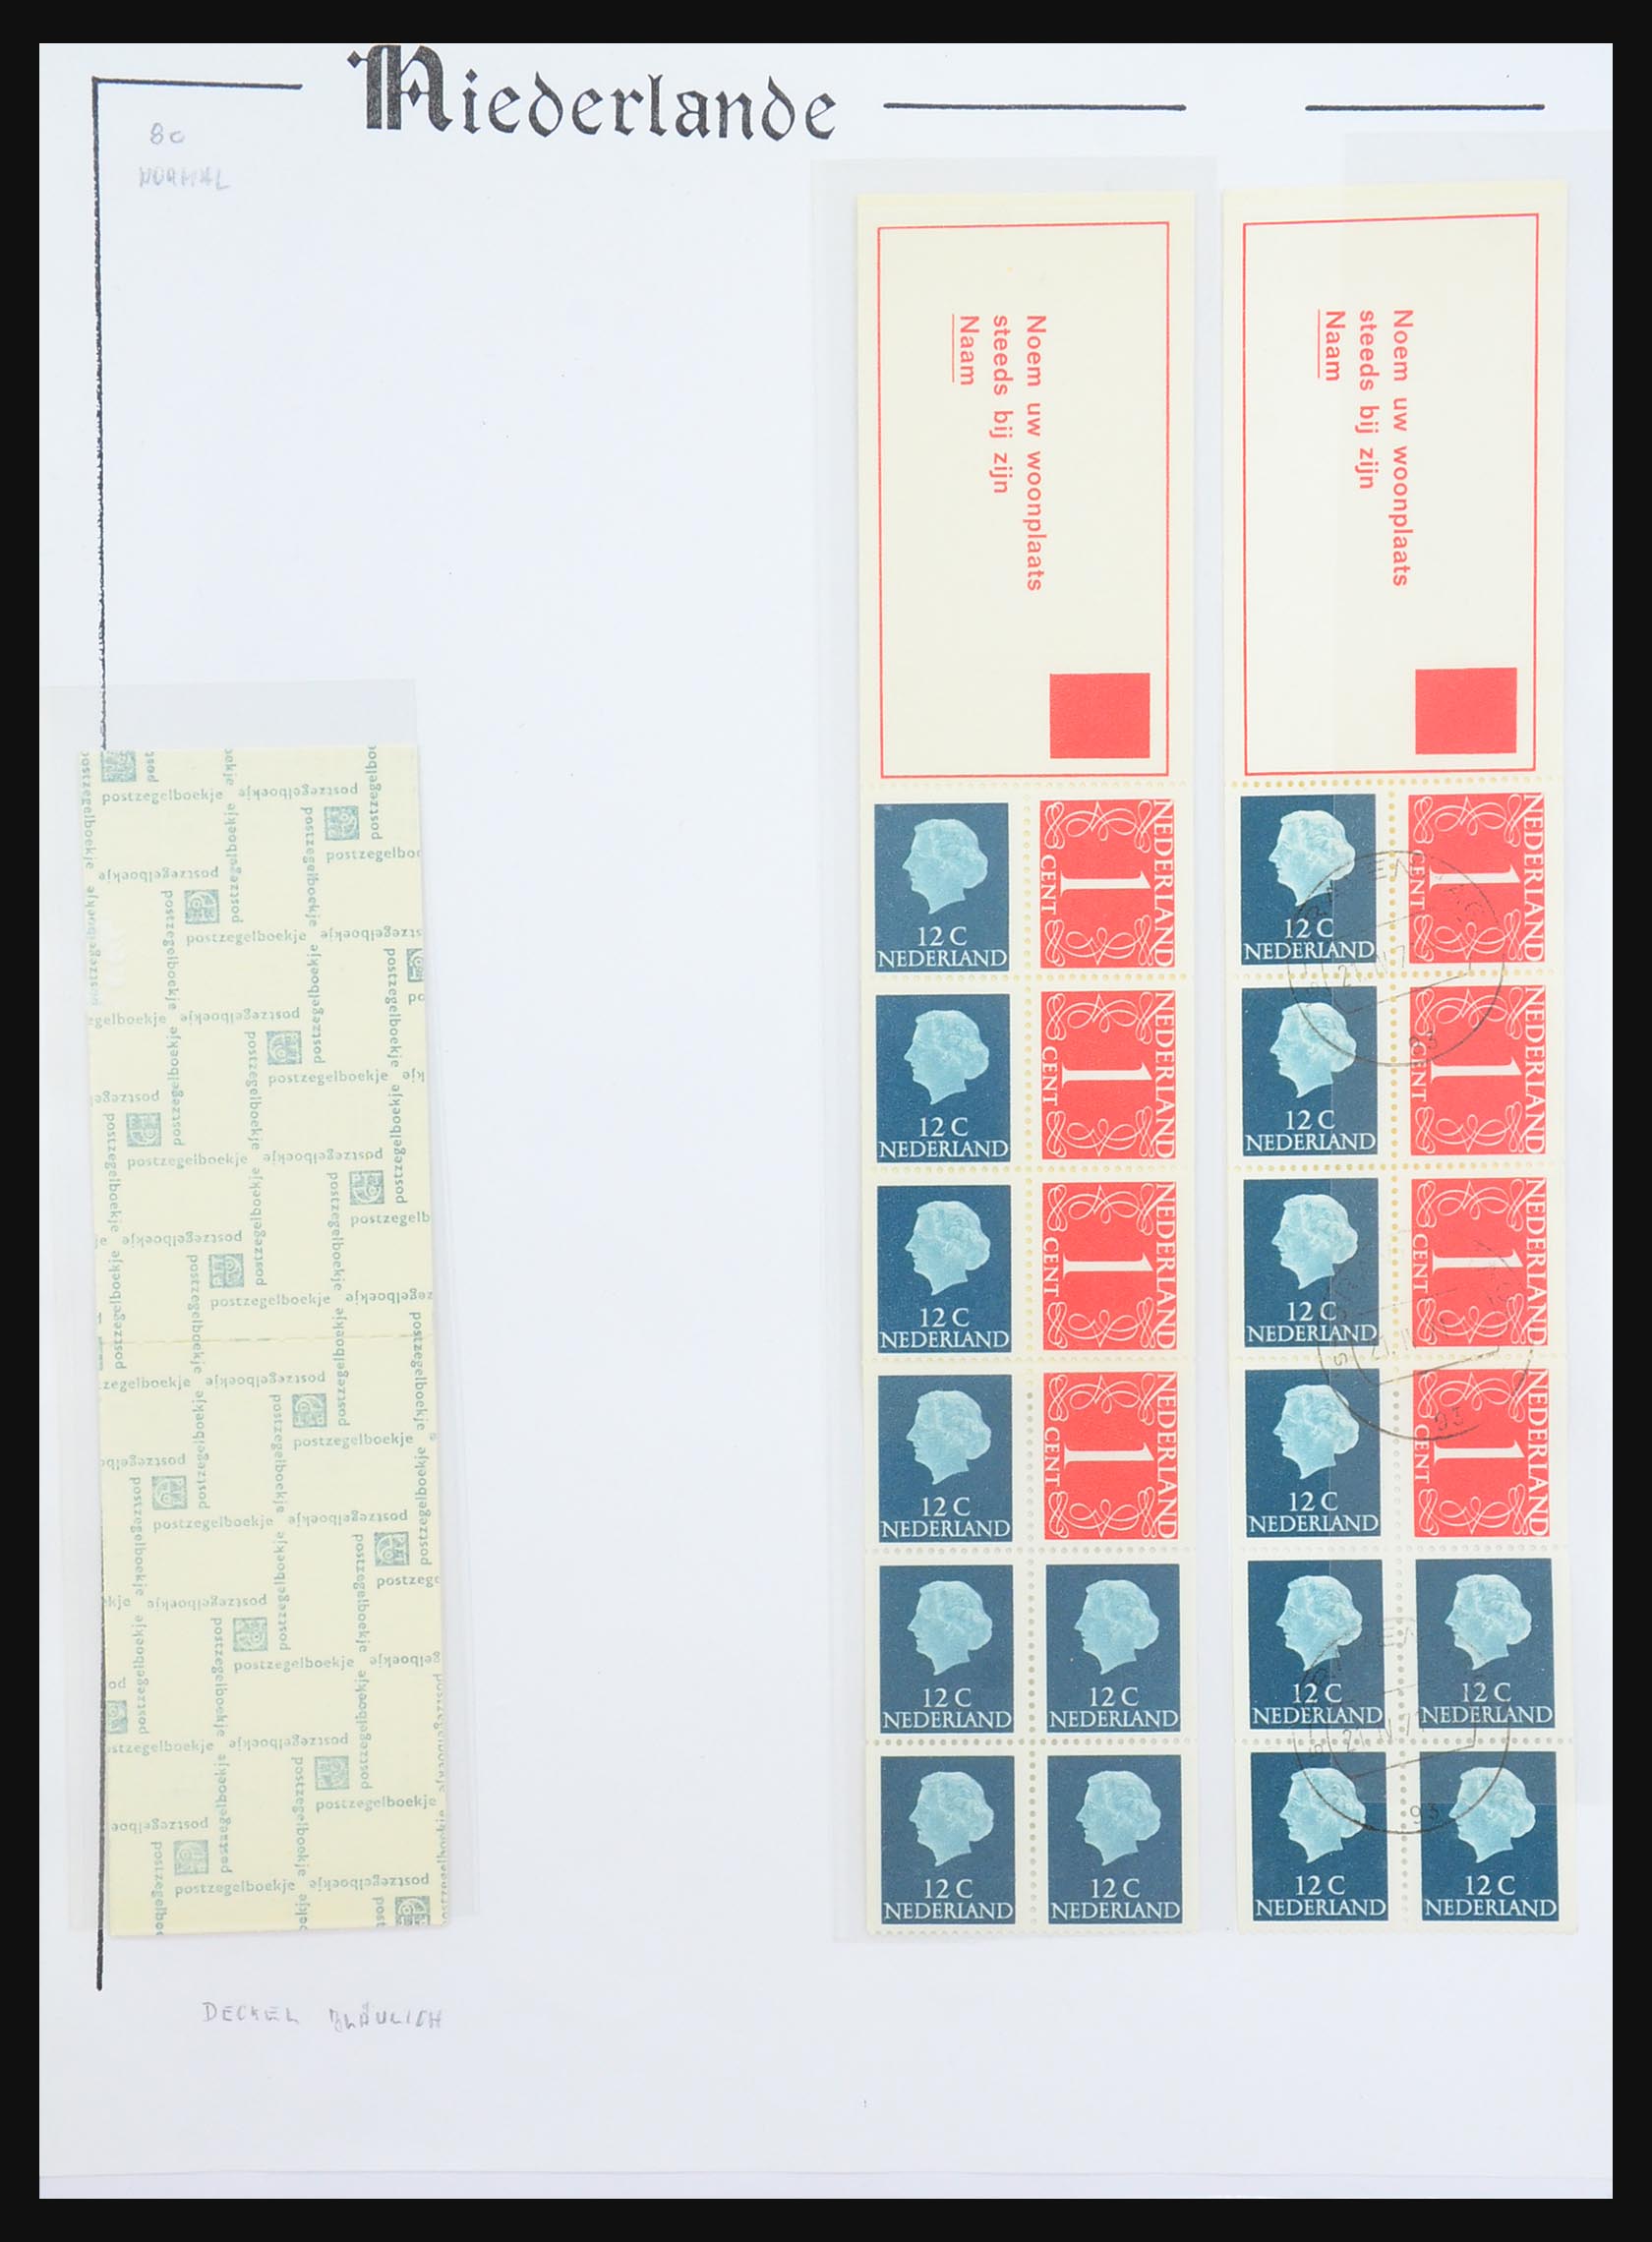 31311 033 - 31311 Netherlands stamp booklets 1964-1994.